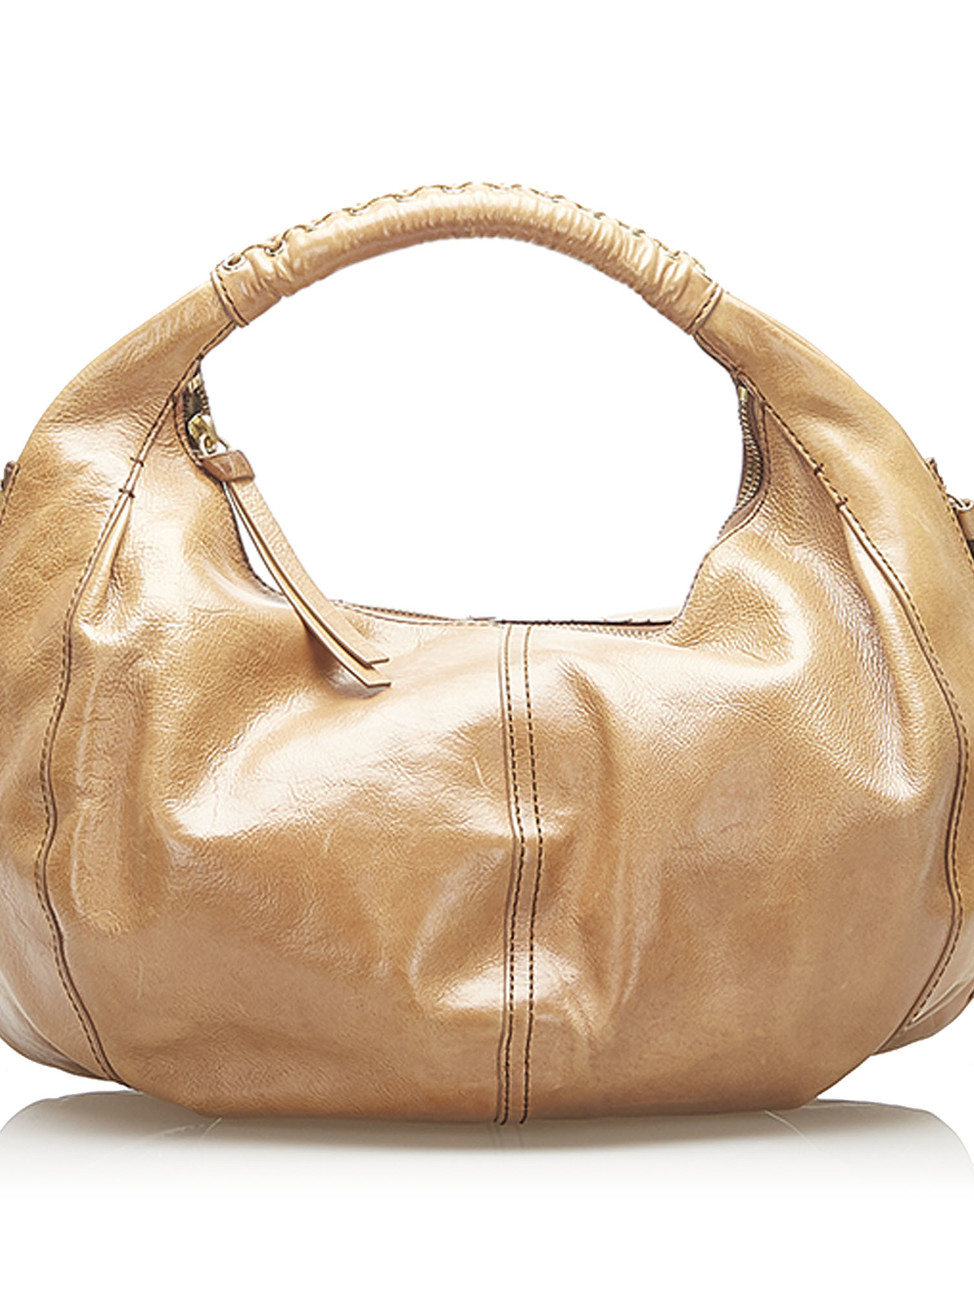 Charm #15 - Agate, Boho Glam for your Designer Handbag – Vintage